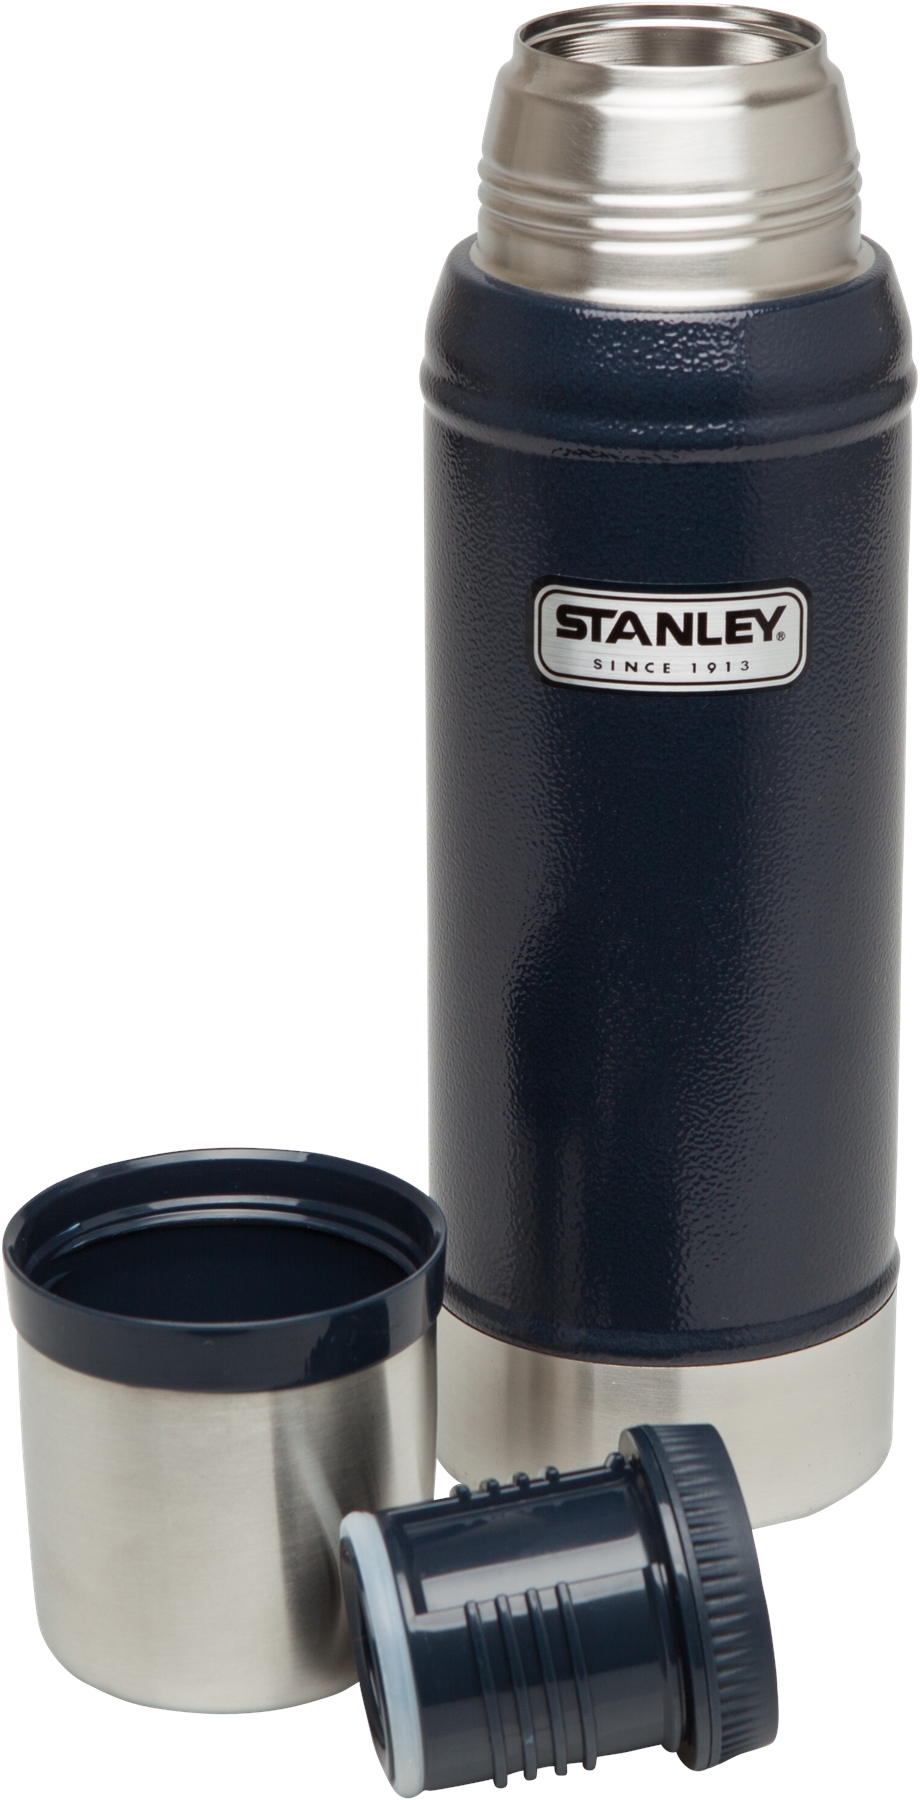 фото Термос Stanley "Classic Vacuum Bottle", цвет: темно-синий, 0,75 л